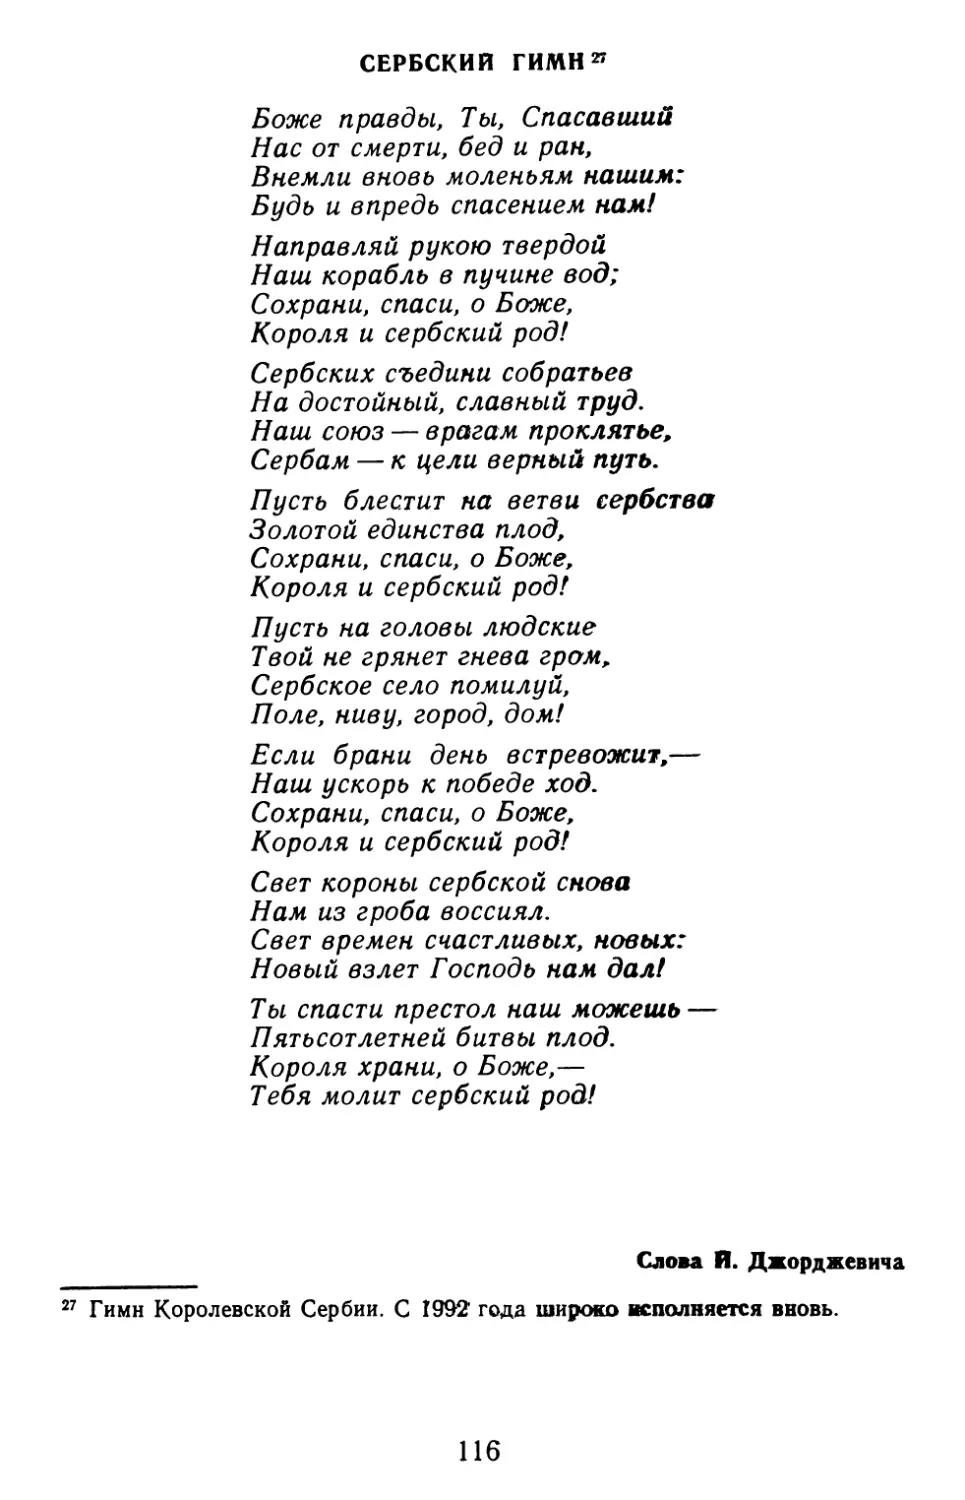 Сербский гимн